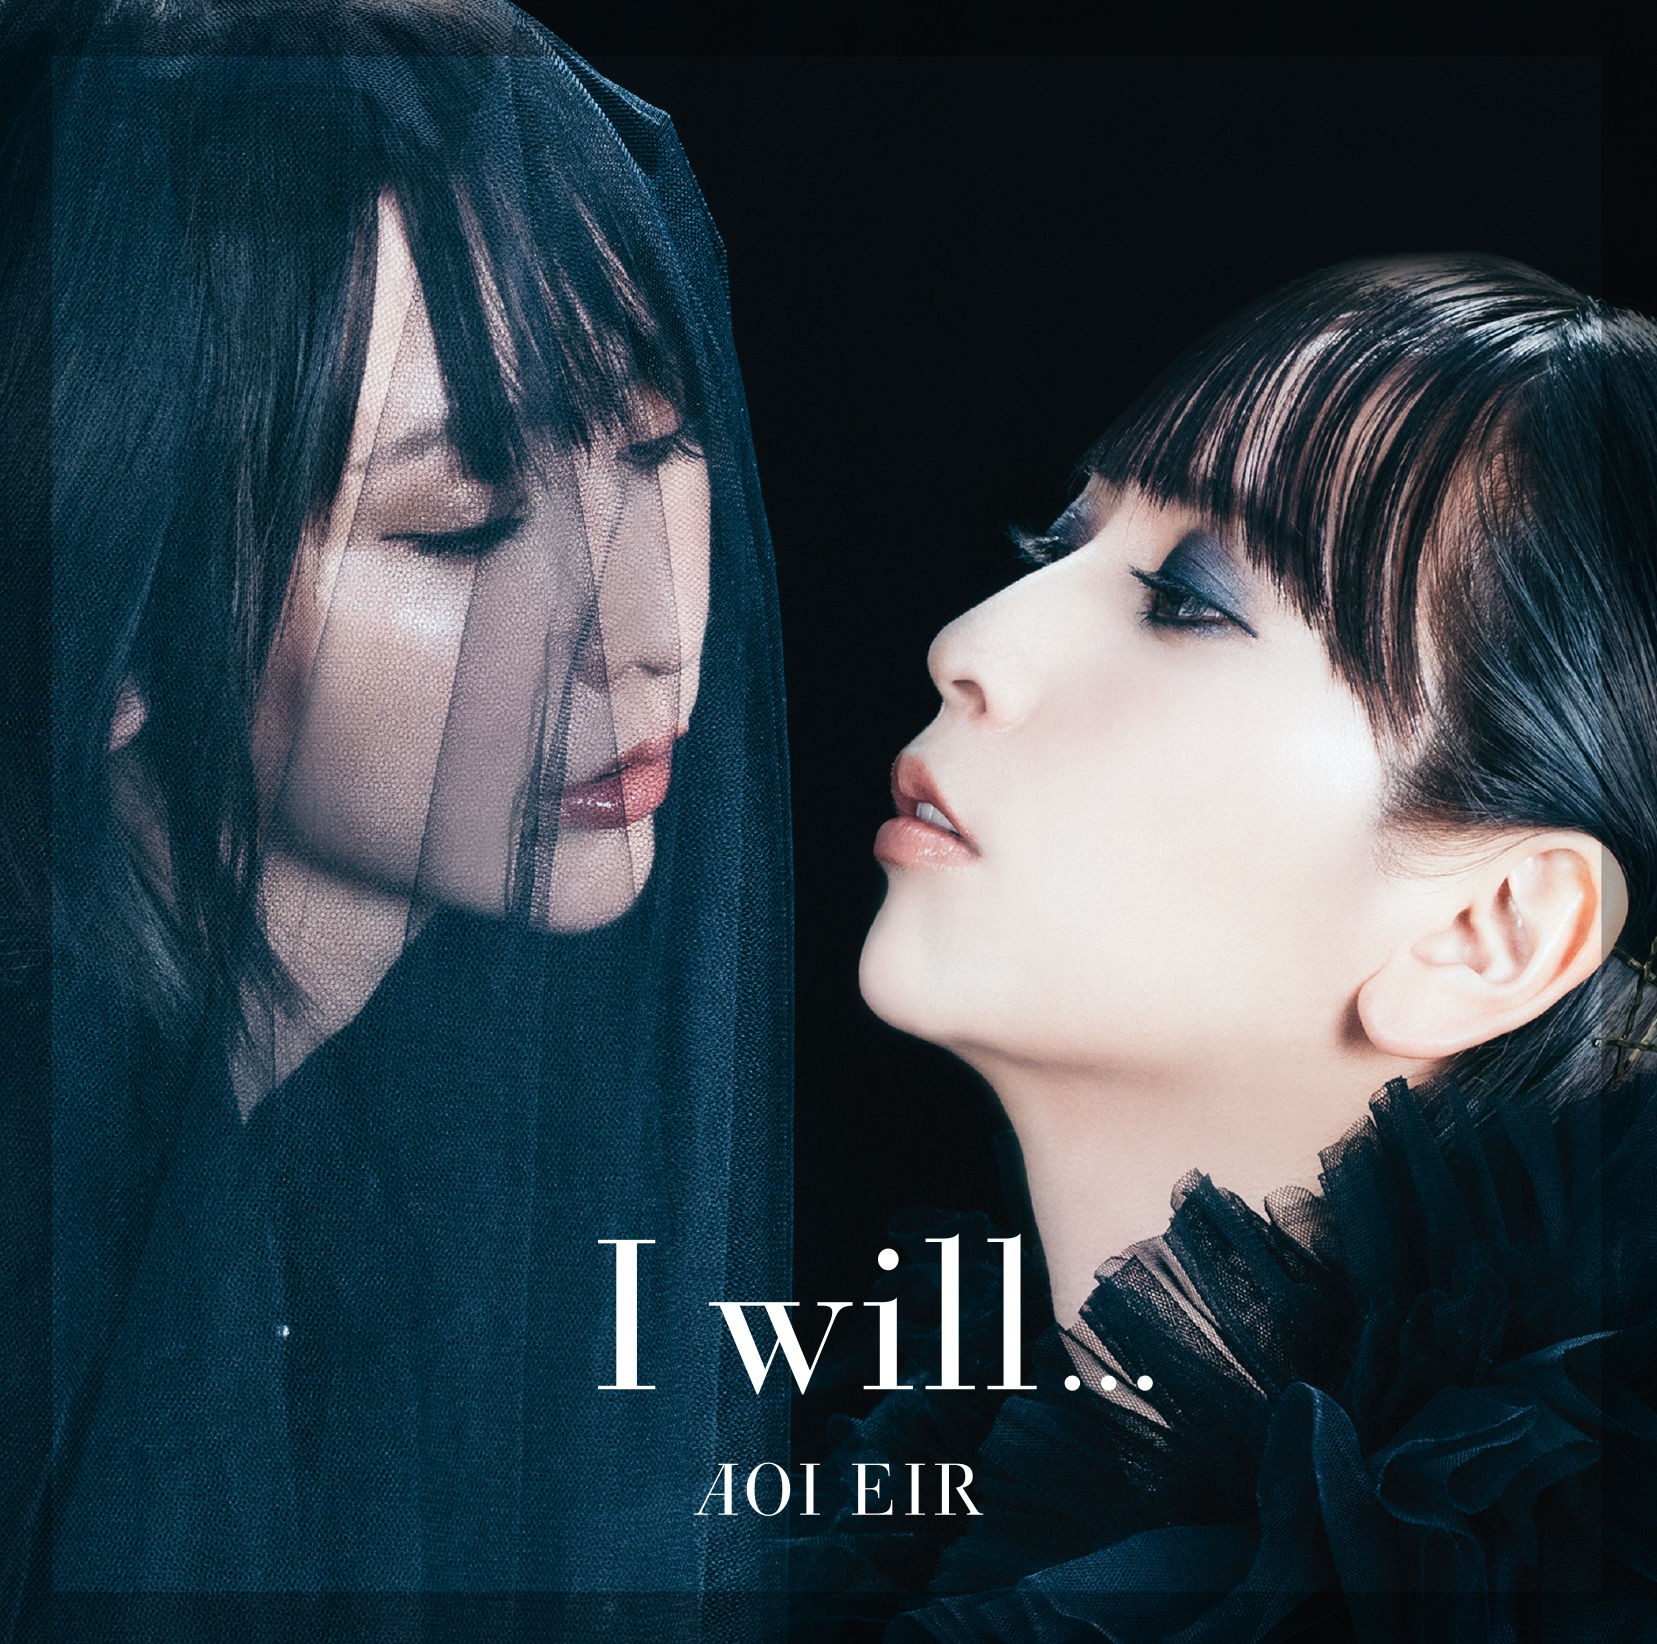 藍井エイル (Eir Aoi) – I will… [Mora FLAC 24bit/96kHz]